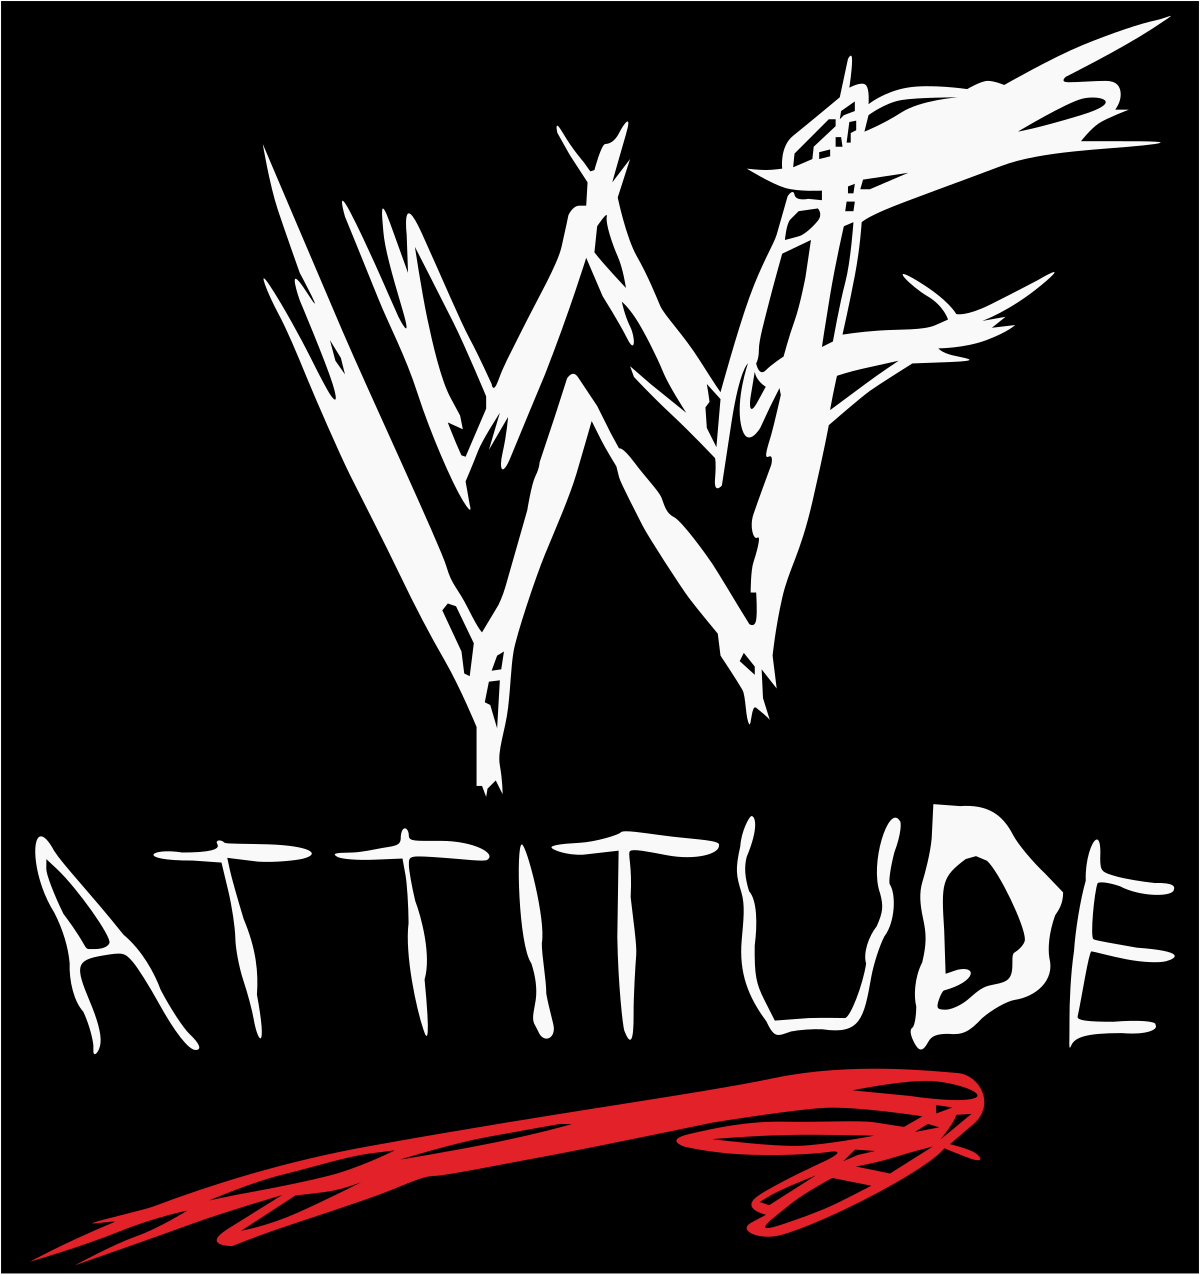 Attitude Era - Wikipedia